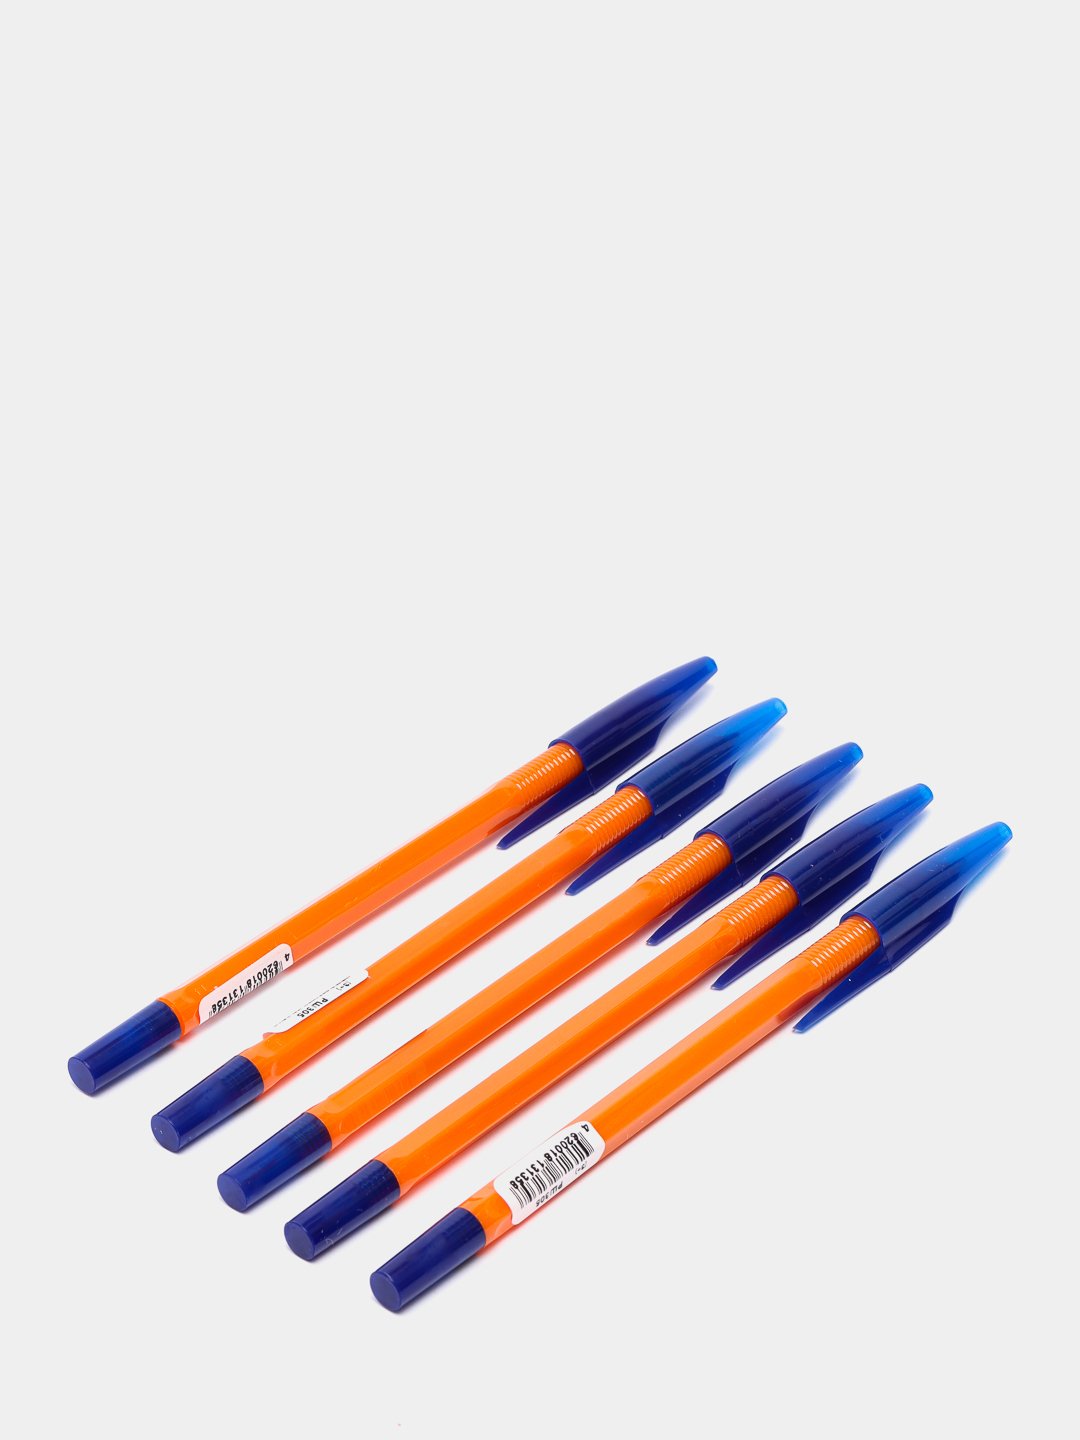 Ручка 0.5 шариковая синяя. Ручка синяя шариковая 4 640026 715524. Ручка шариковая синяя (толщина линии 0,5 мм). Ручка шариковая синяя 0.5 мм. Ручки синие.